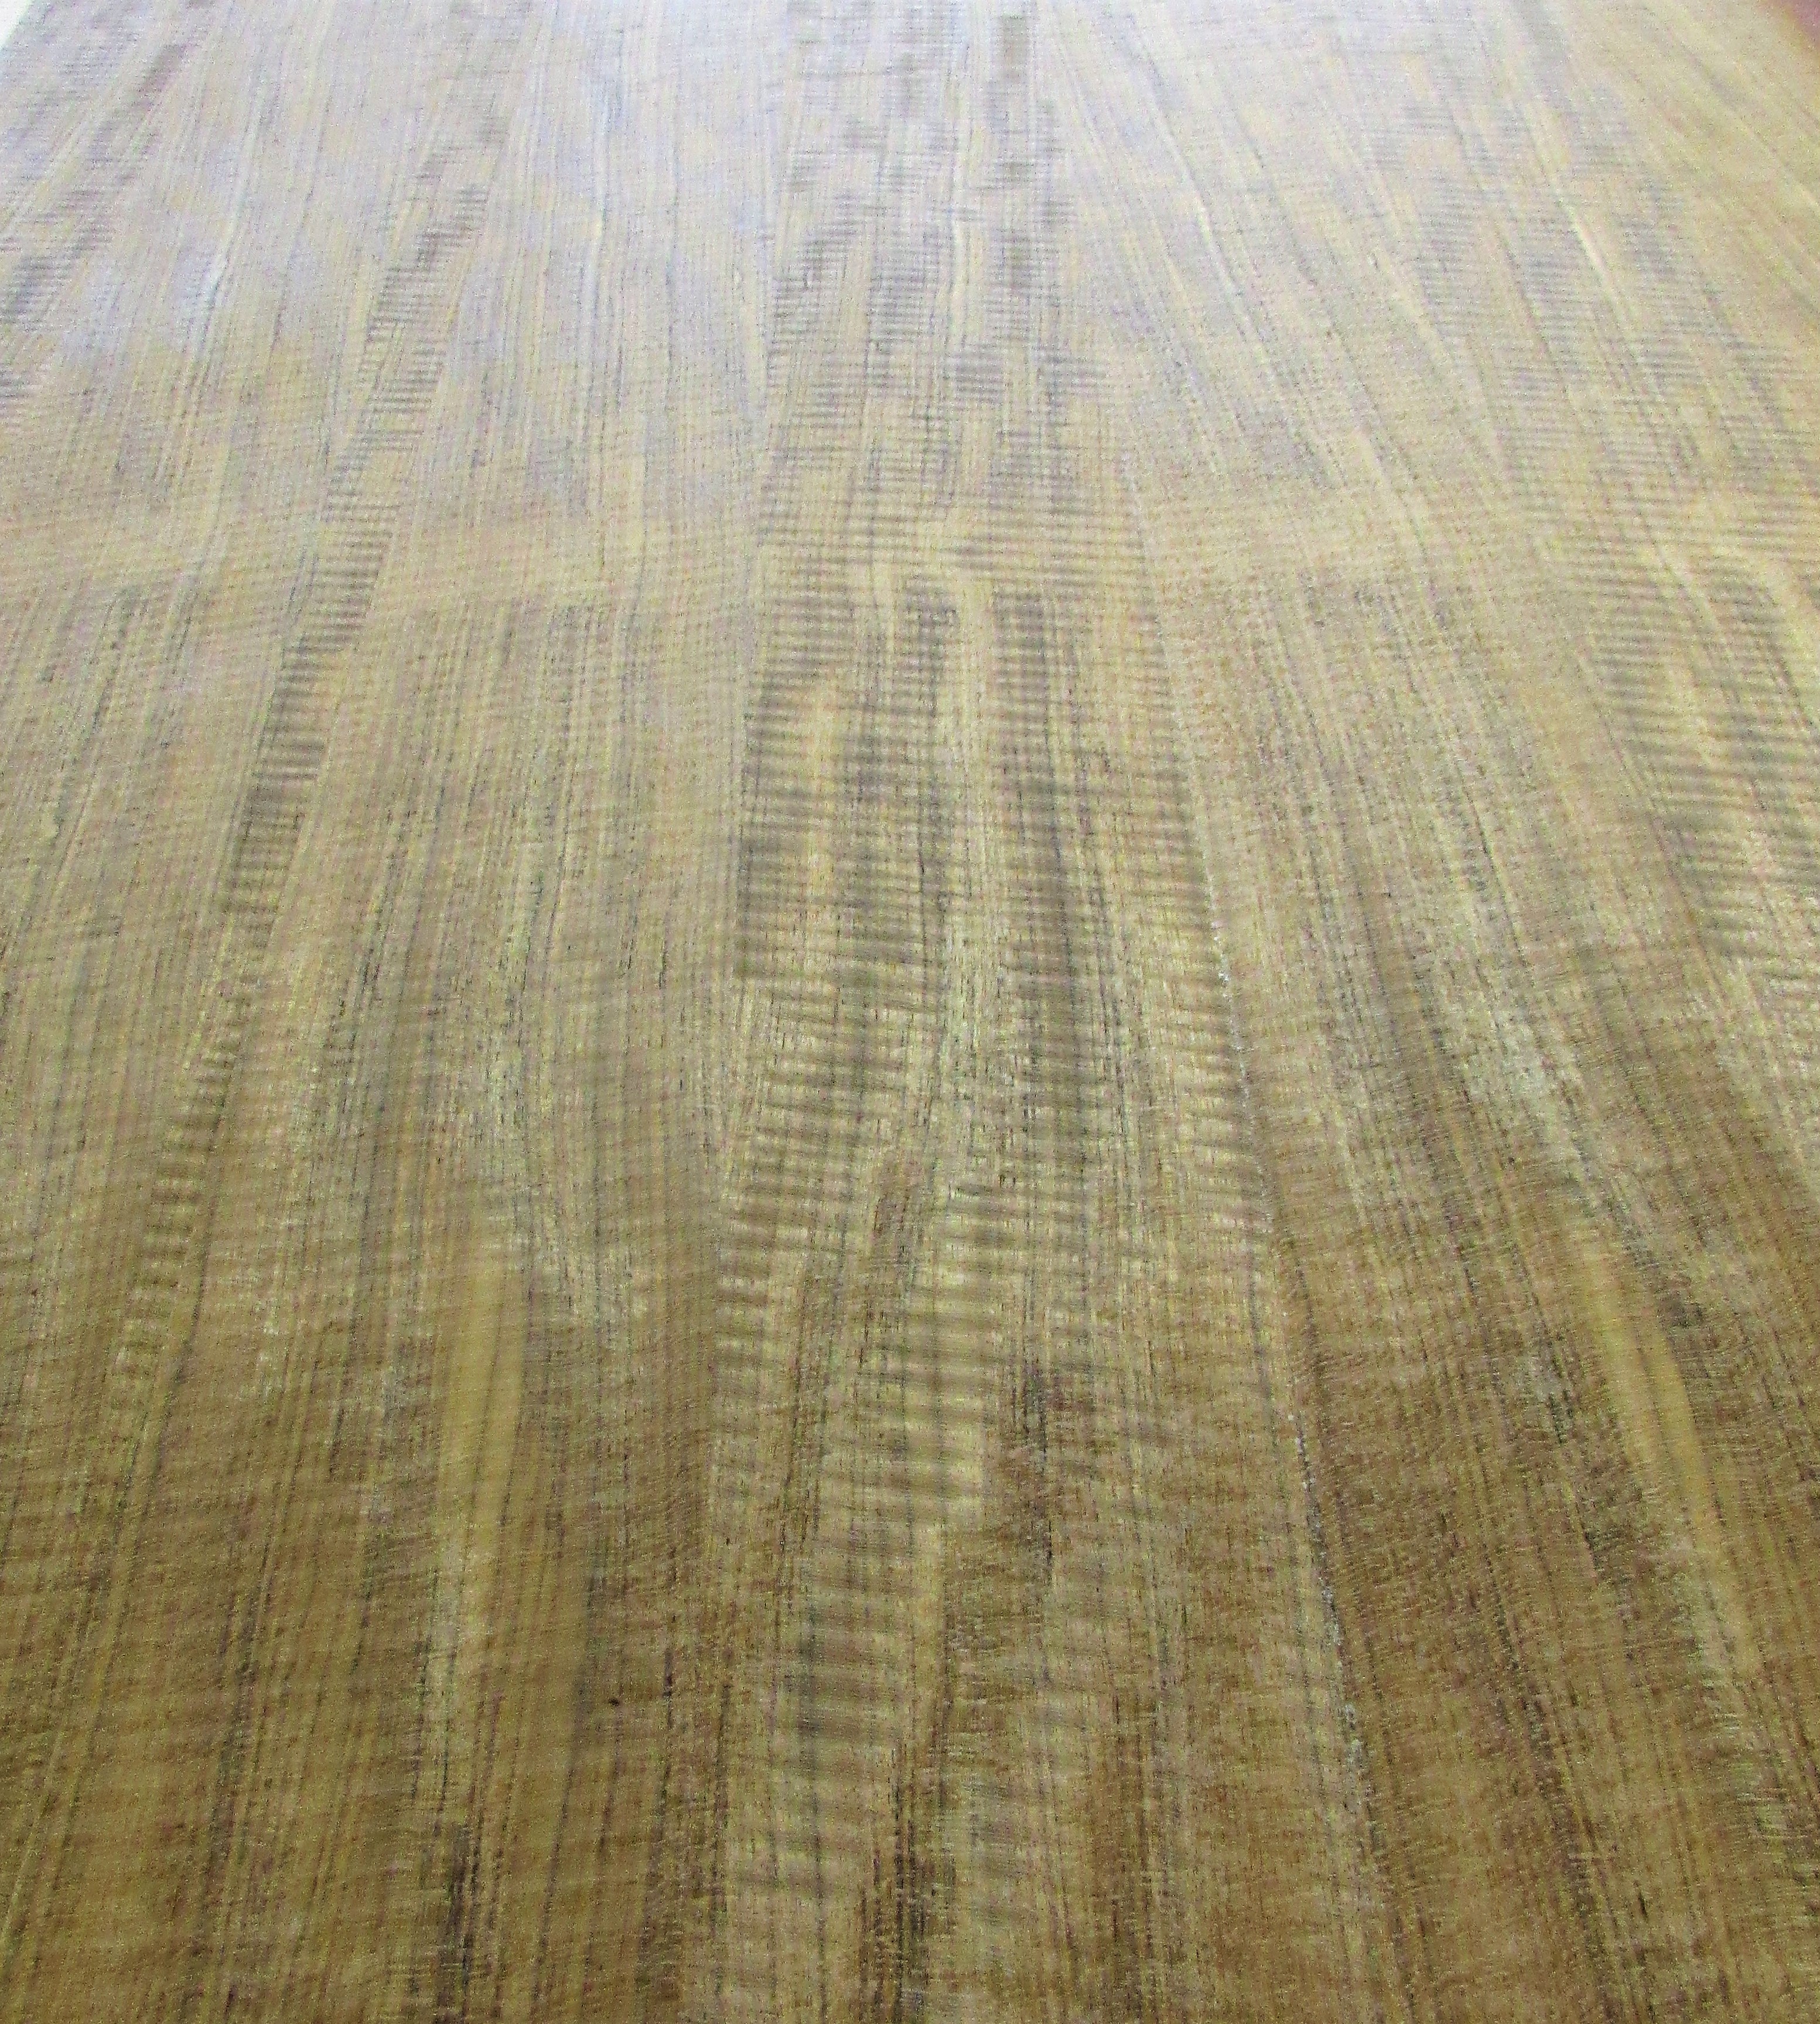 Picture of Mozambique hardwood veneer flooring